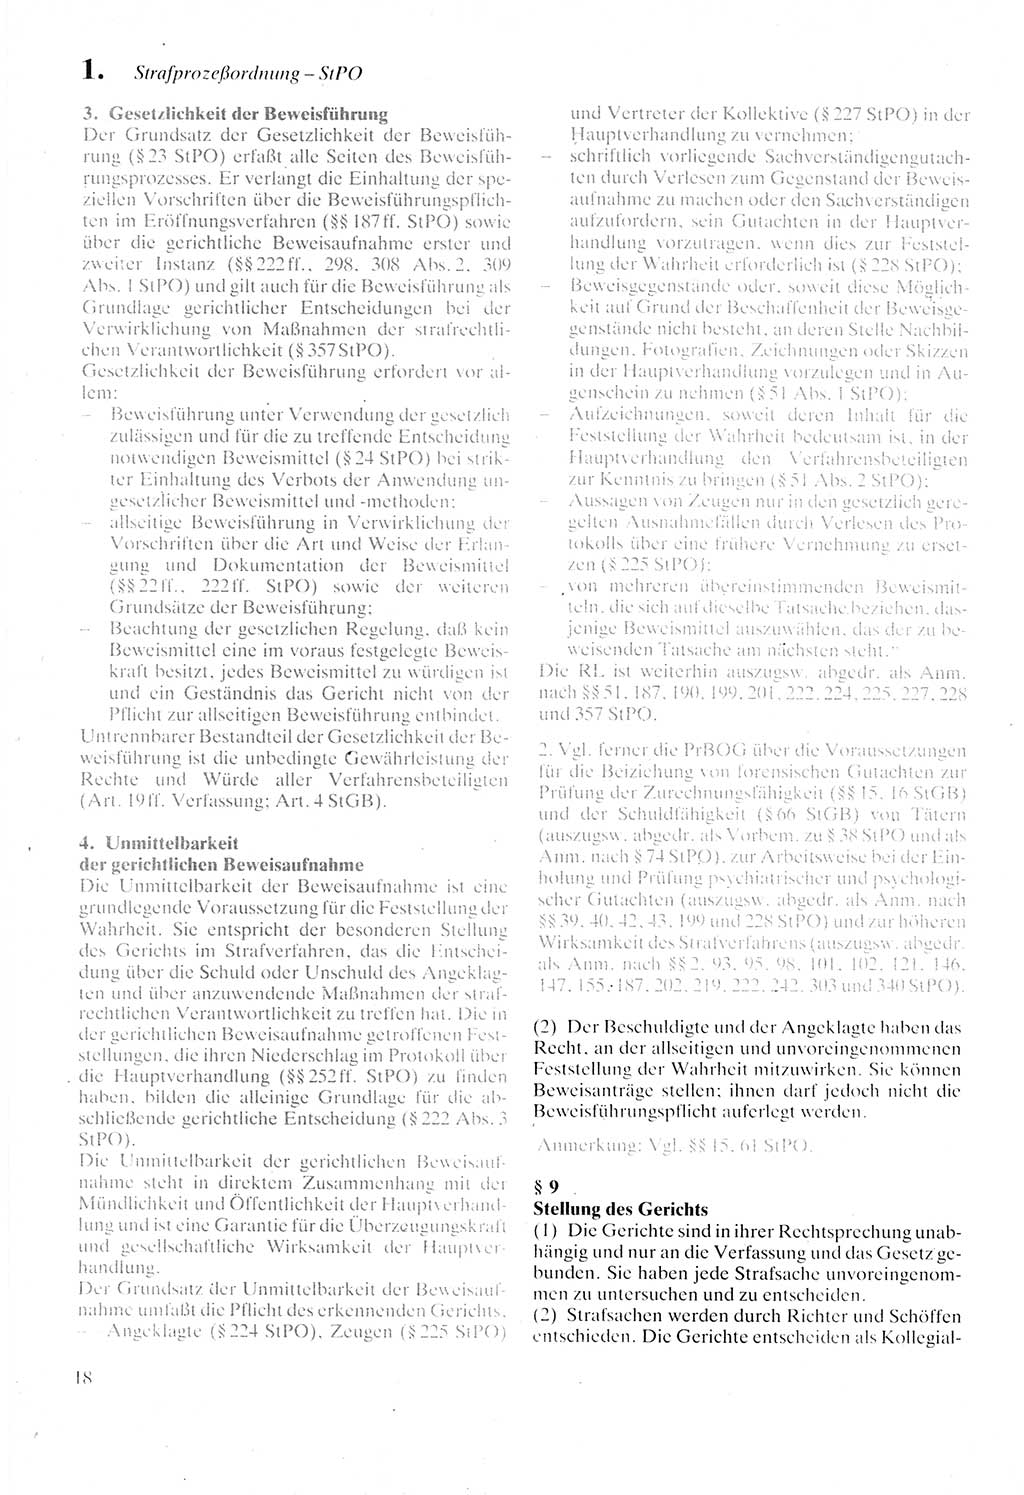 Strafprozeßordnung (StPO) der Deutschen Demokratischen Republik (DDR) sowie angrenzende Gesetze und Bestimmungen 1987, Seite 18 (StPO DDR Ges. Best. 1987, S. 18)